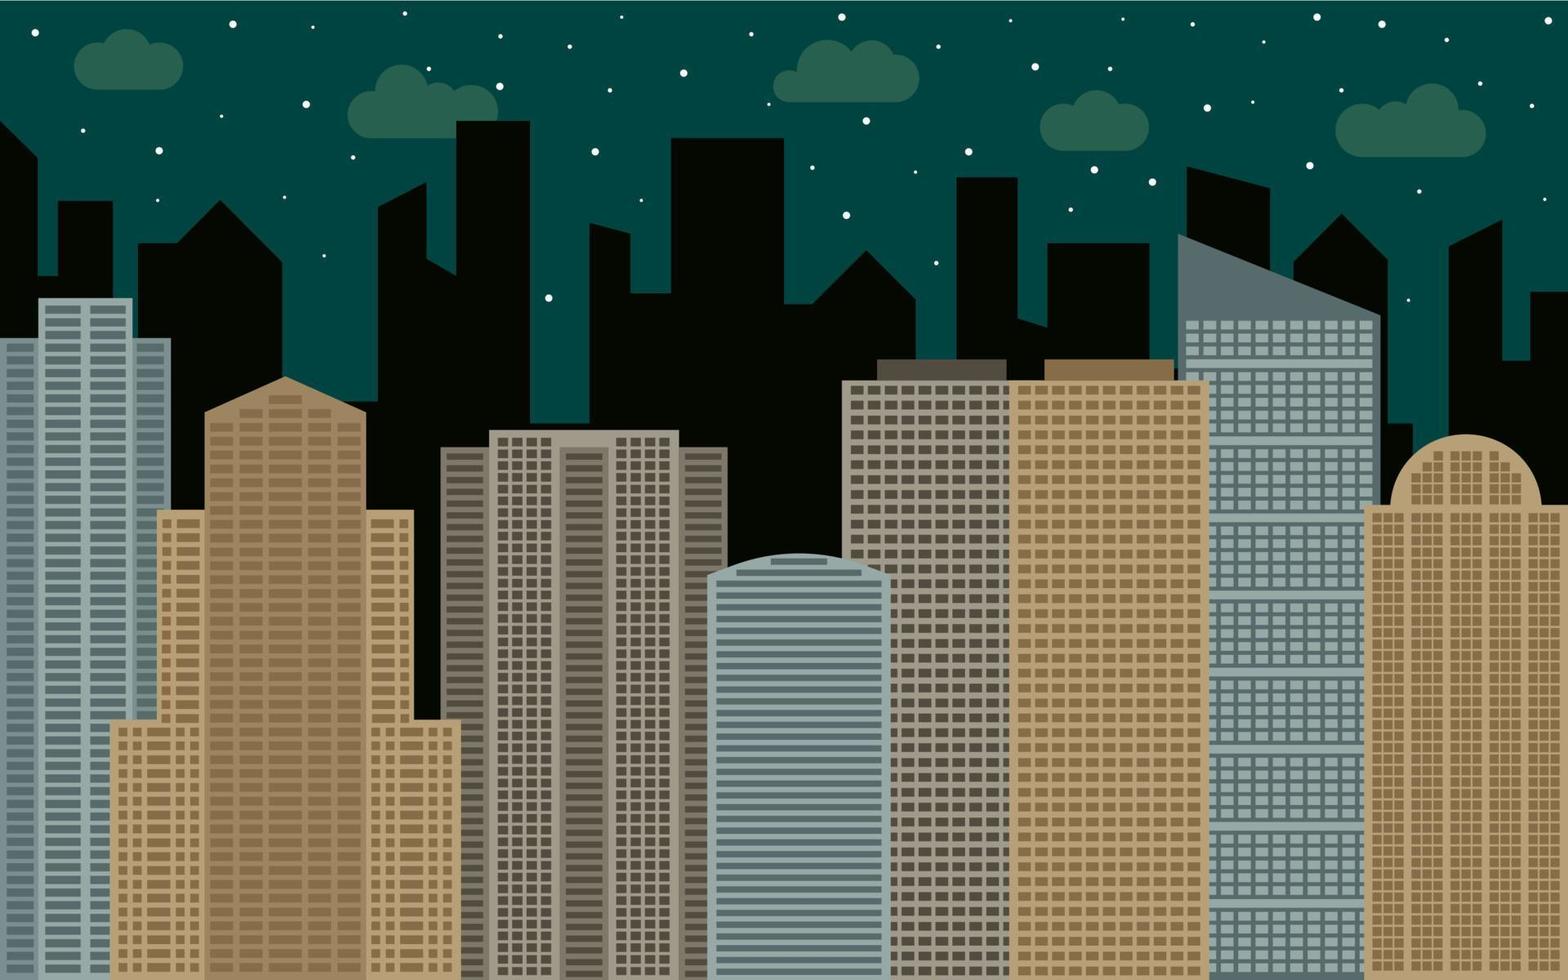 paisaje urbano nocturno. vista de la calle con paisaje urbano, rascacielos y edificios modernos en un día soleado. espacio de la ciudad en concepto de fondo de estilo plano. vector